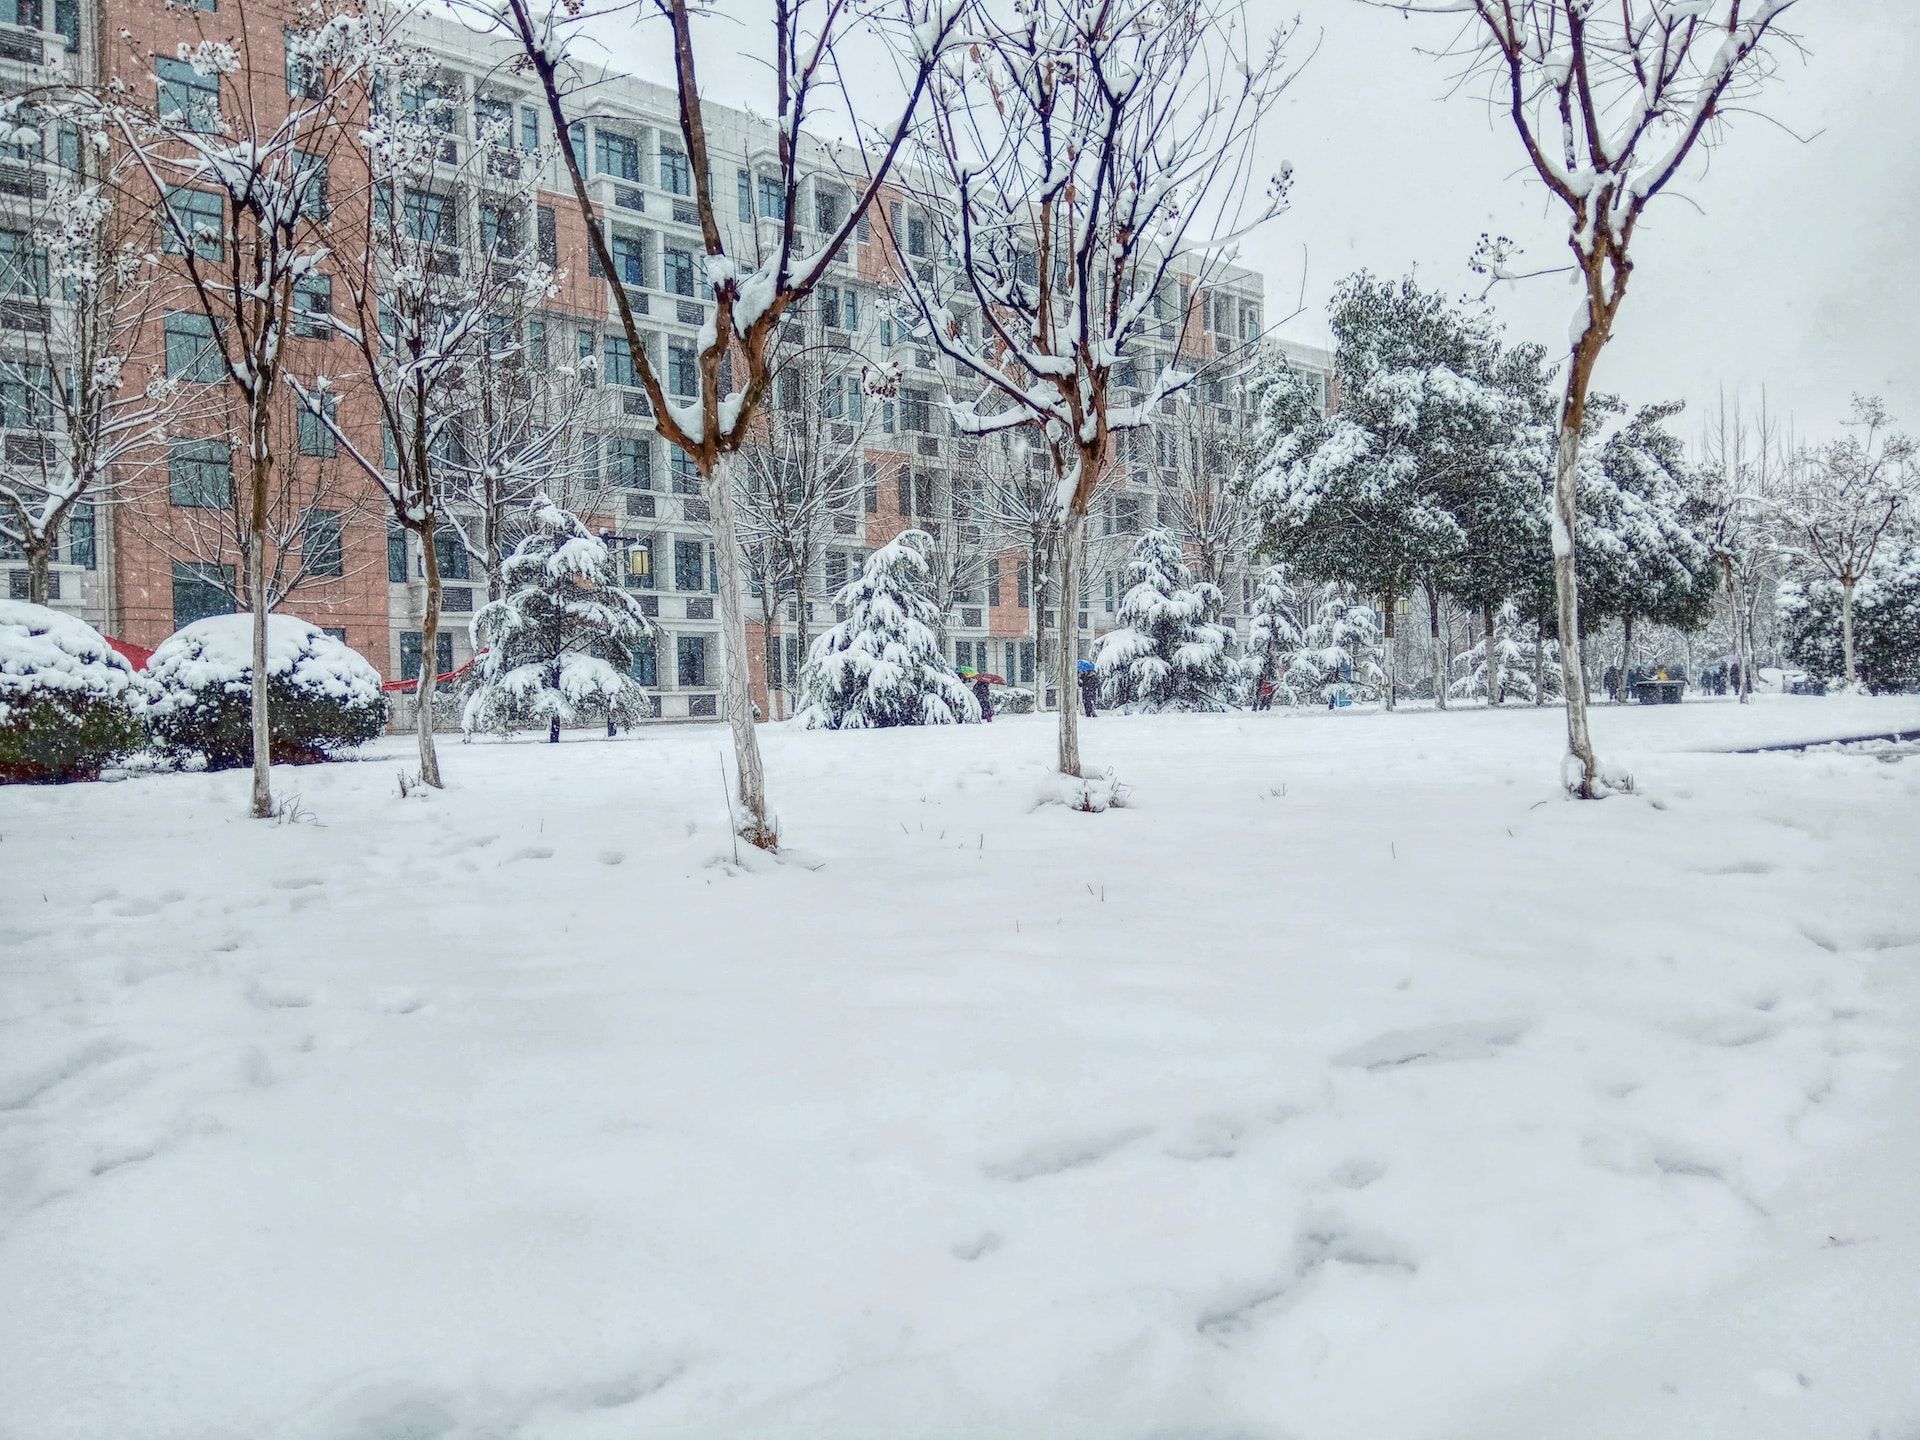 Den 25. januar betyder sne, at sommeren bliver våd og regnfuld / © Pexels